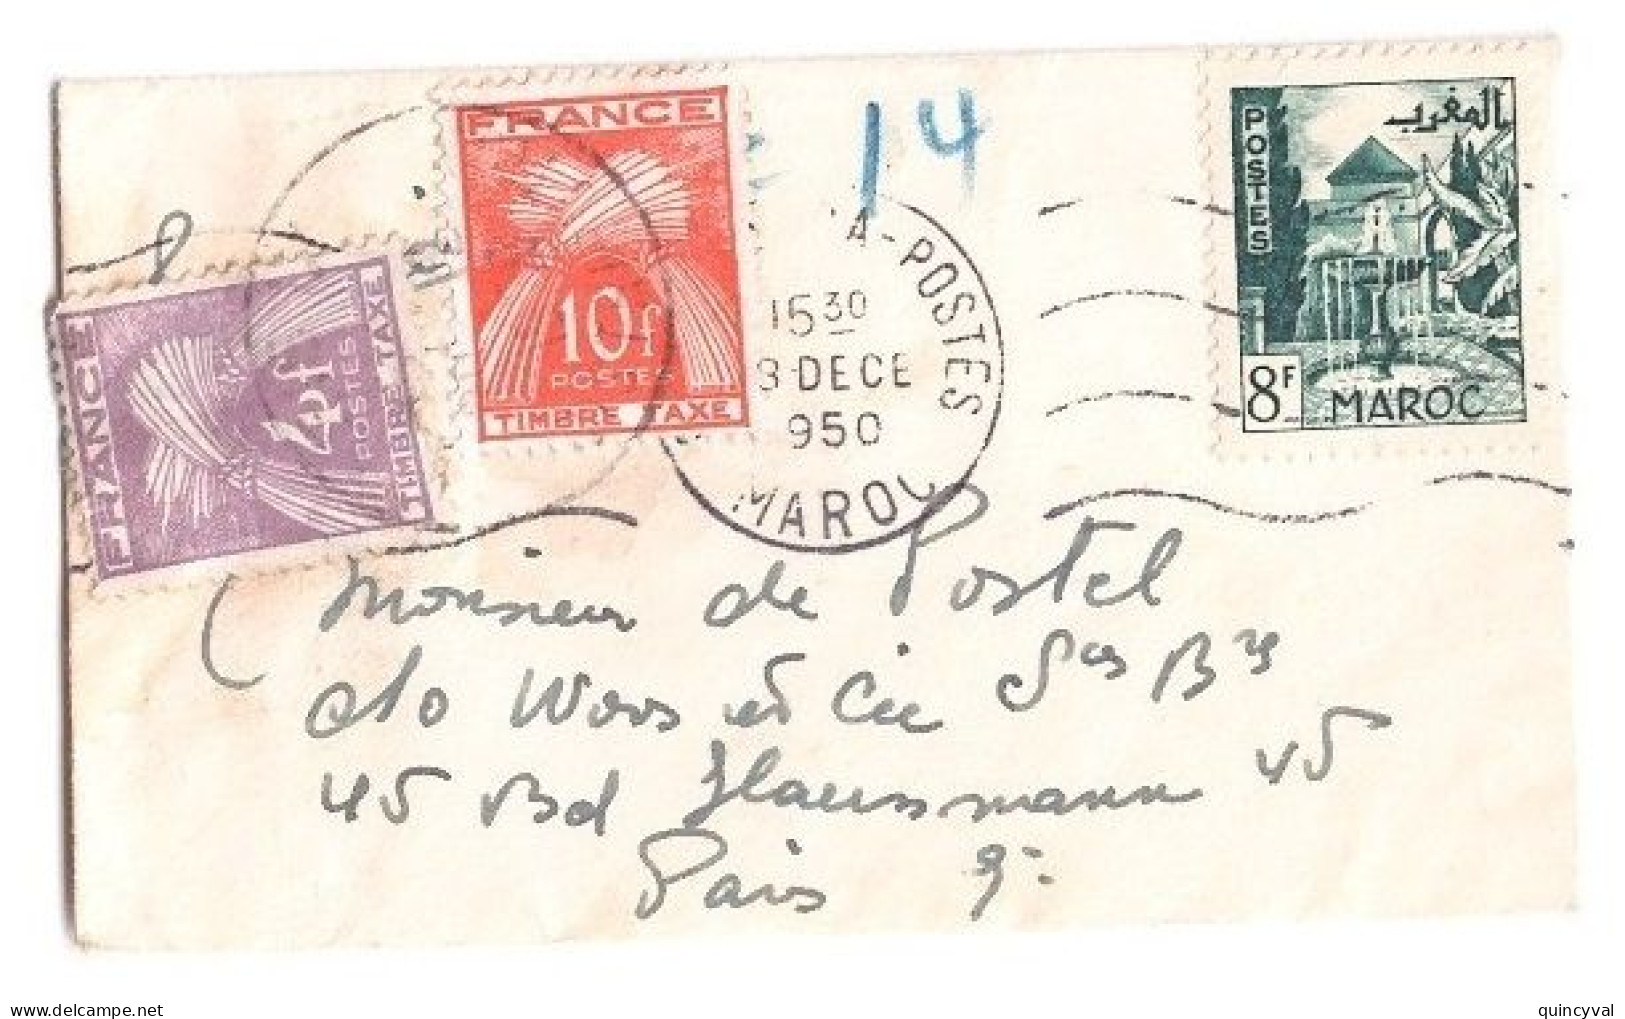 PARIS Carte De Visite Mignonnette Origine Maroc Affranchie 8 F Taxe 14 F Gerbes Yv T 86 84 Ob 1950 - 1859-1959 Brieven & Documenten